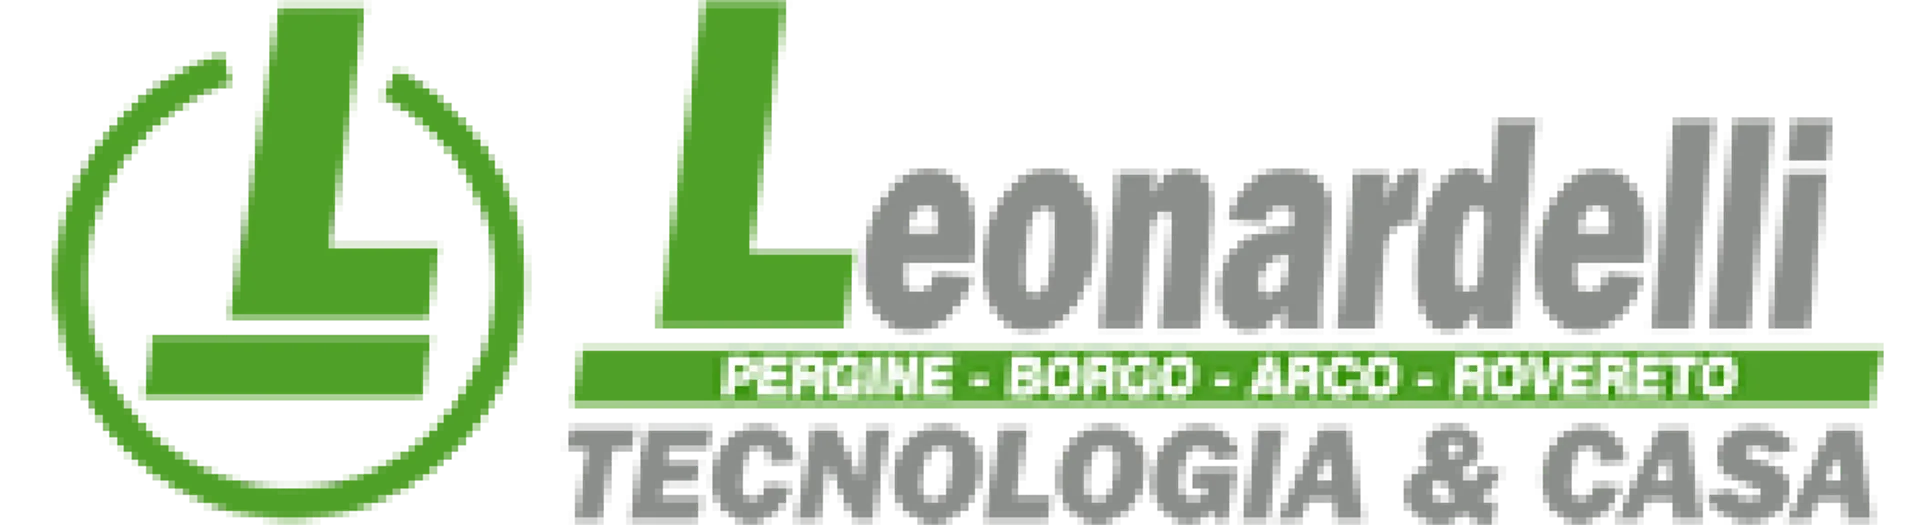 LEONARDELLI logo